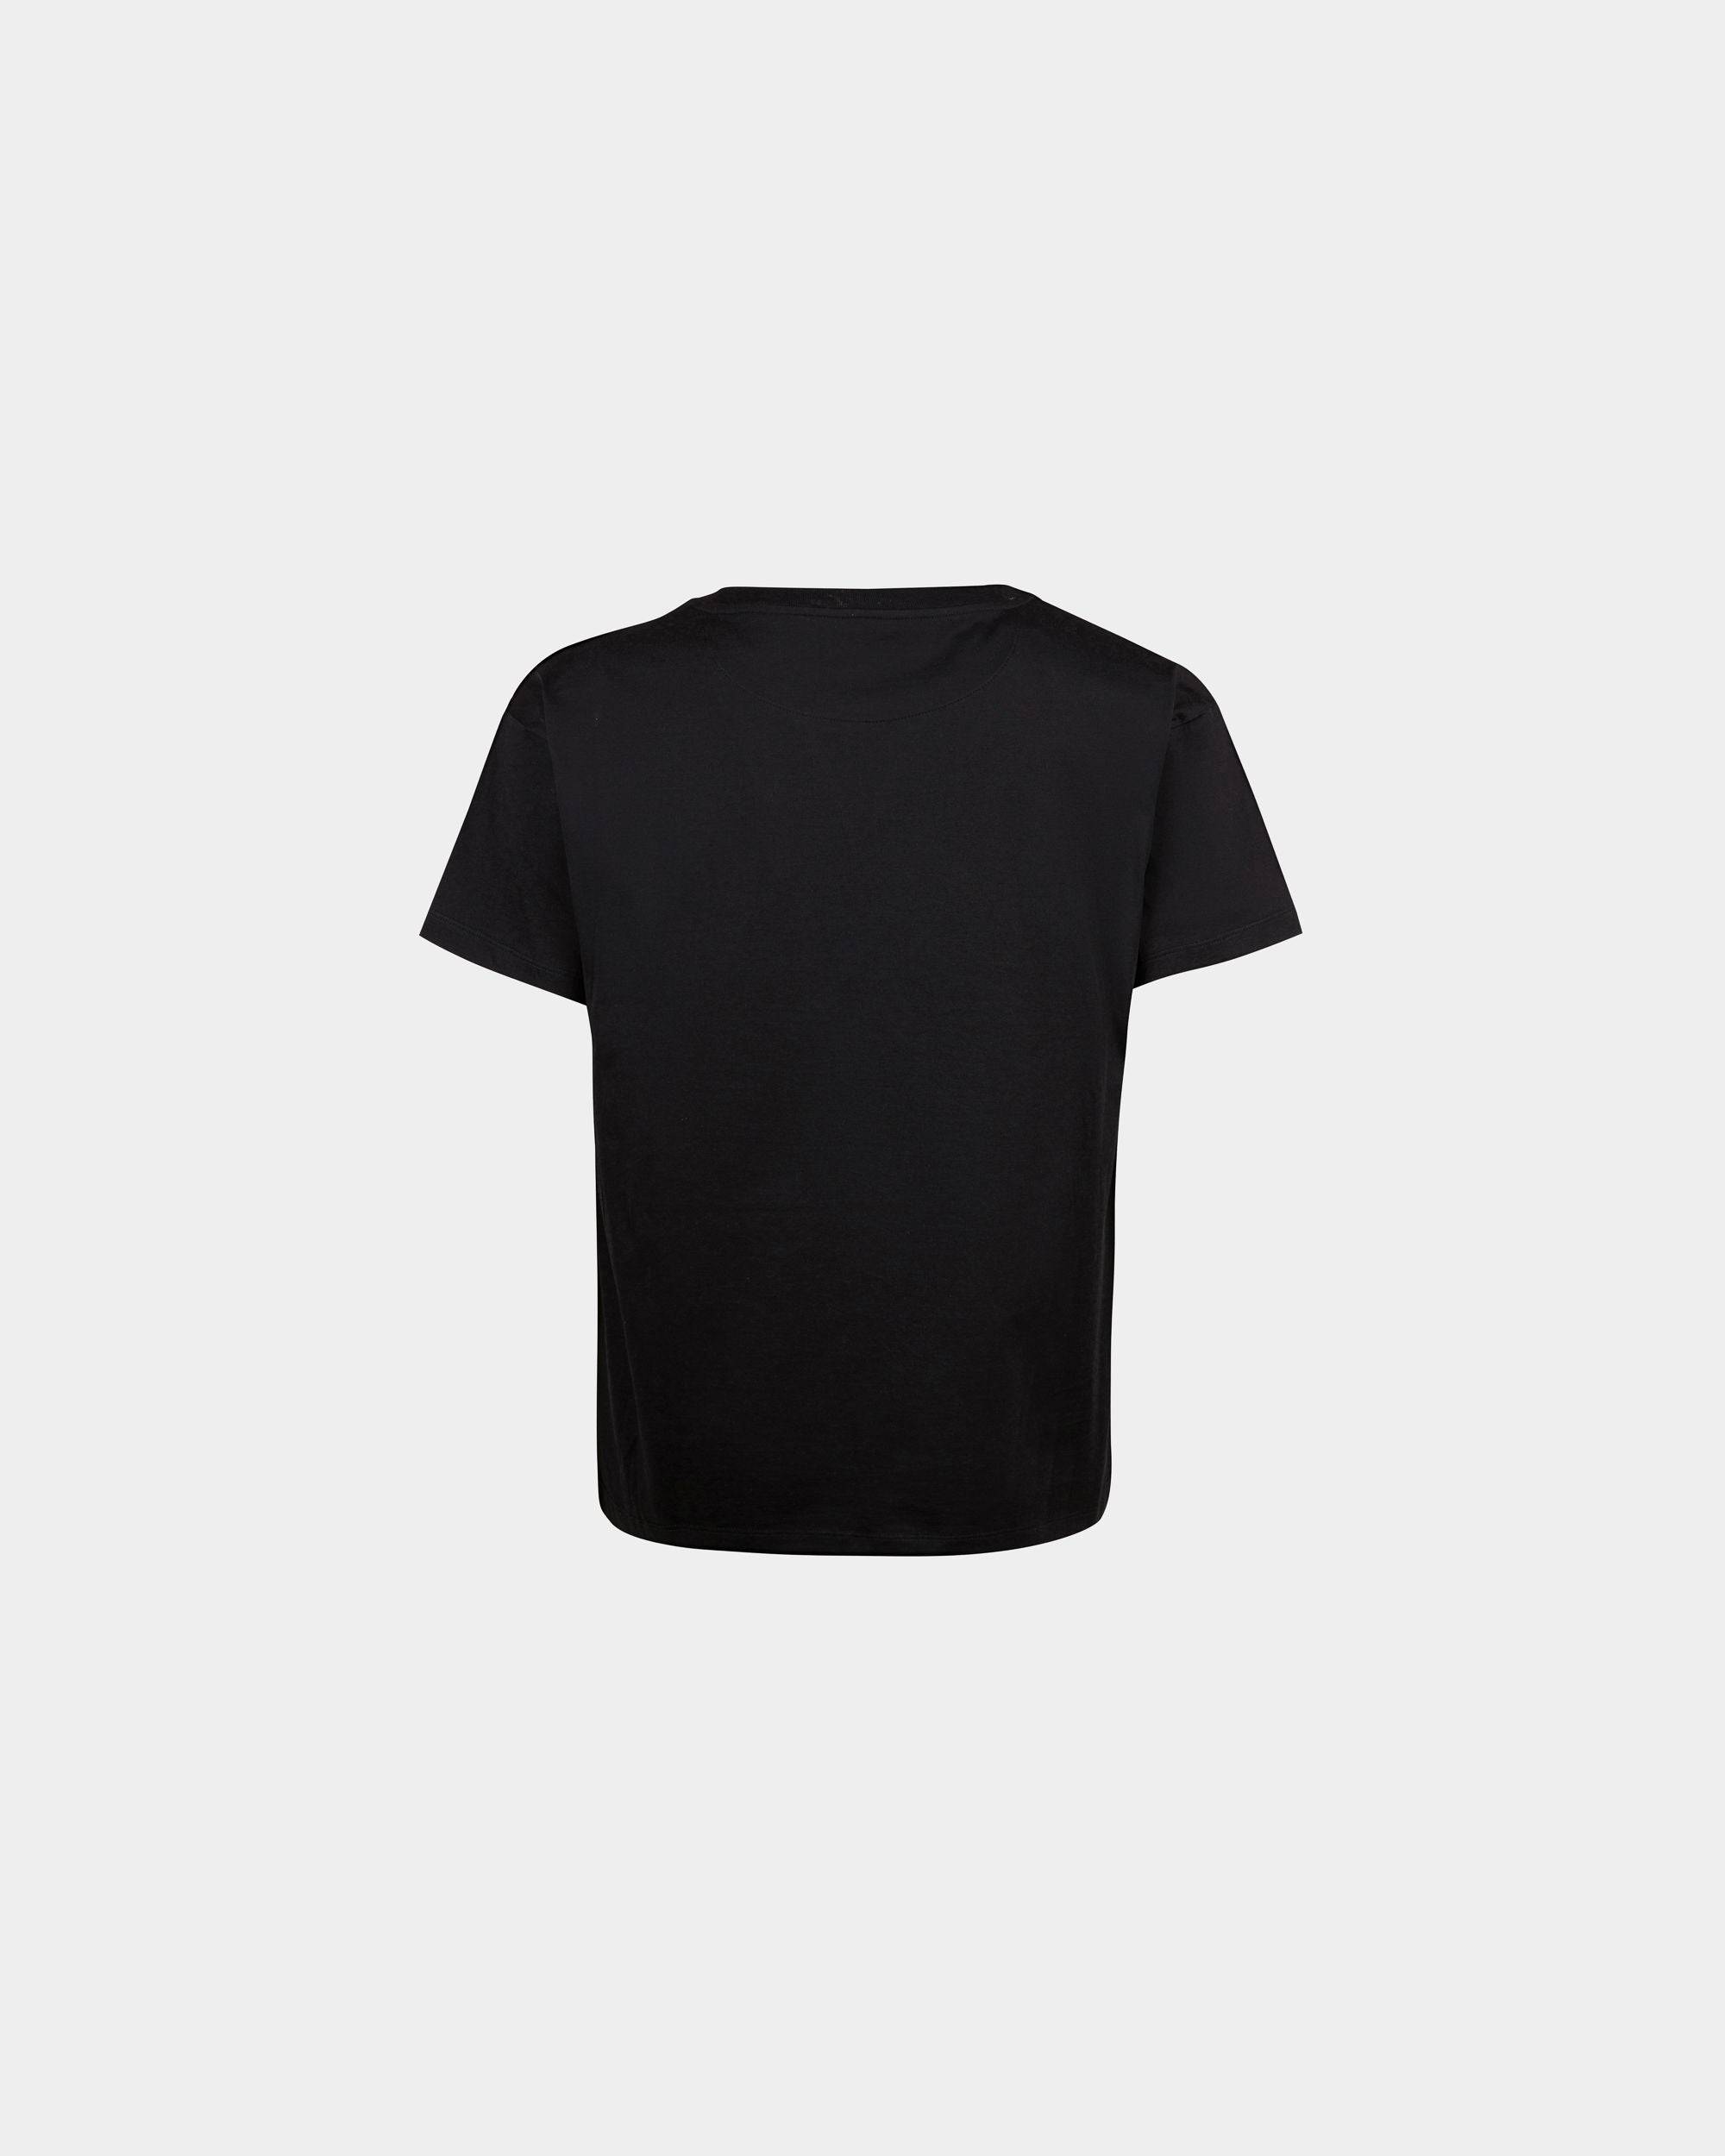 Men's T-Shirt in Black Cotton | Bally | Still Life Back